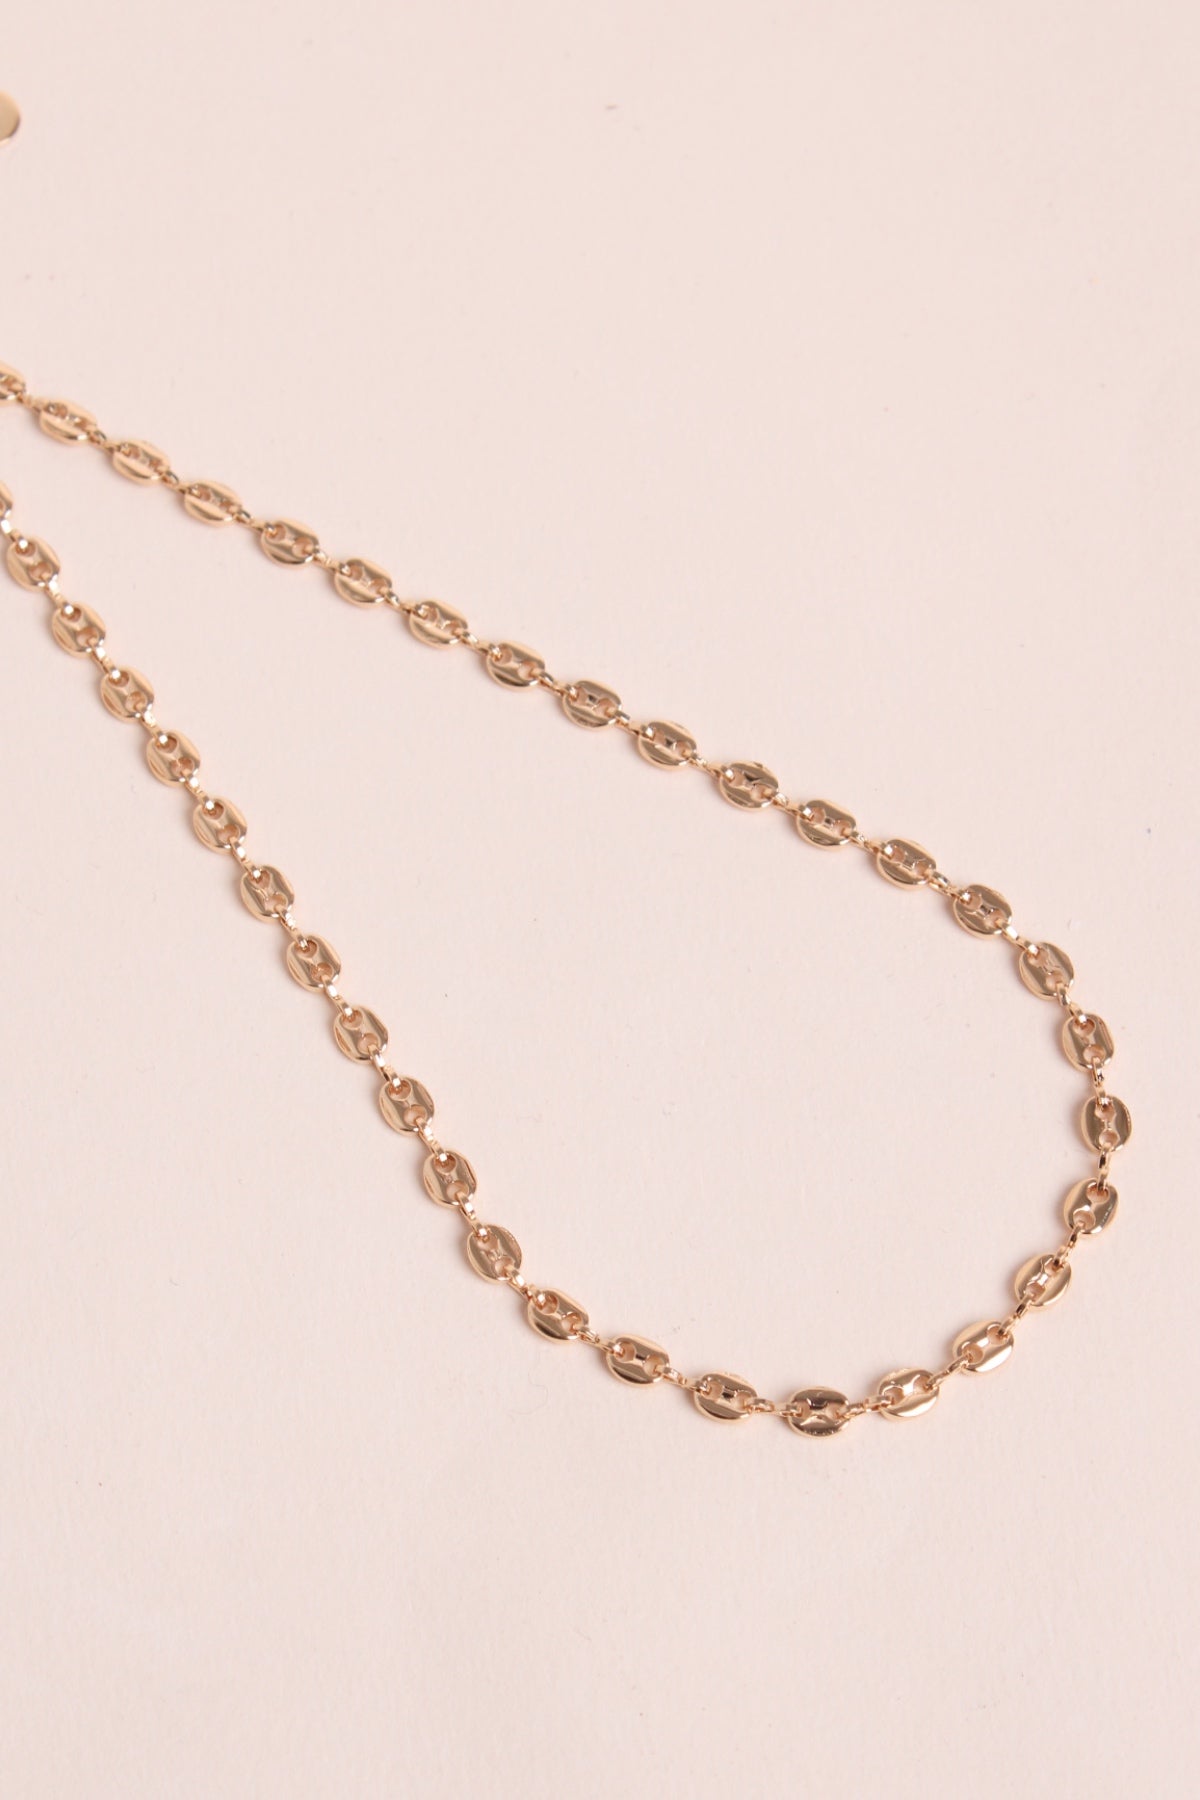 India necklace - waekura